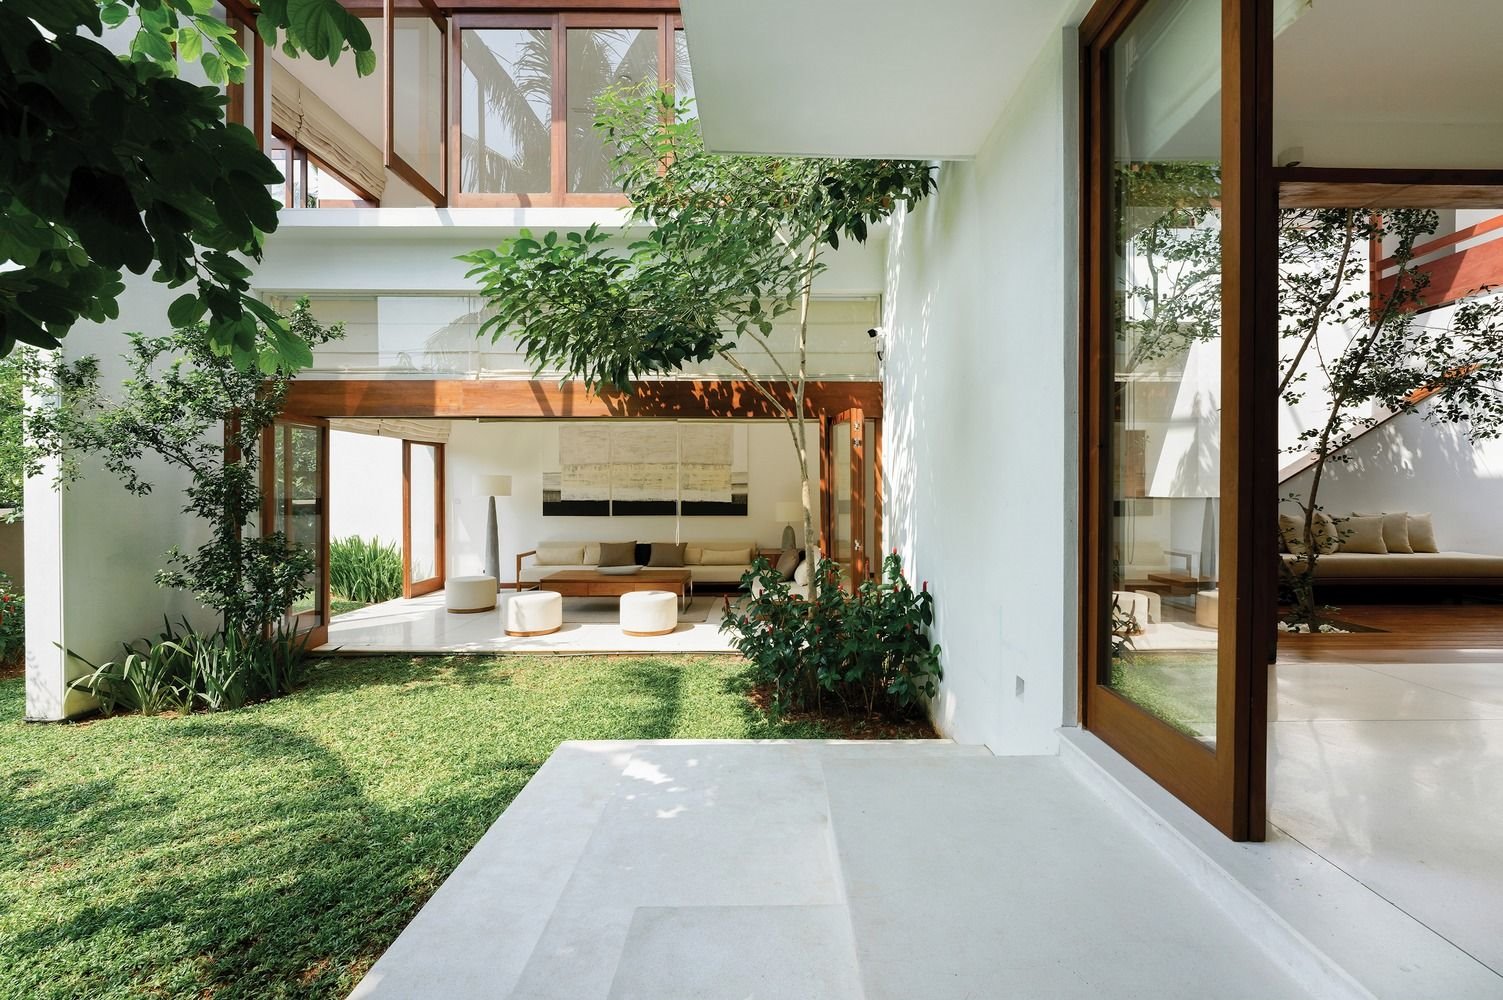 Casa con paredes blancas y patio interior